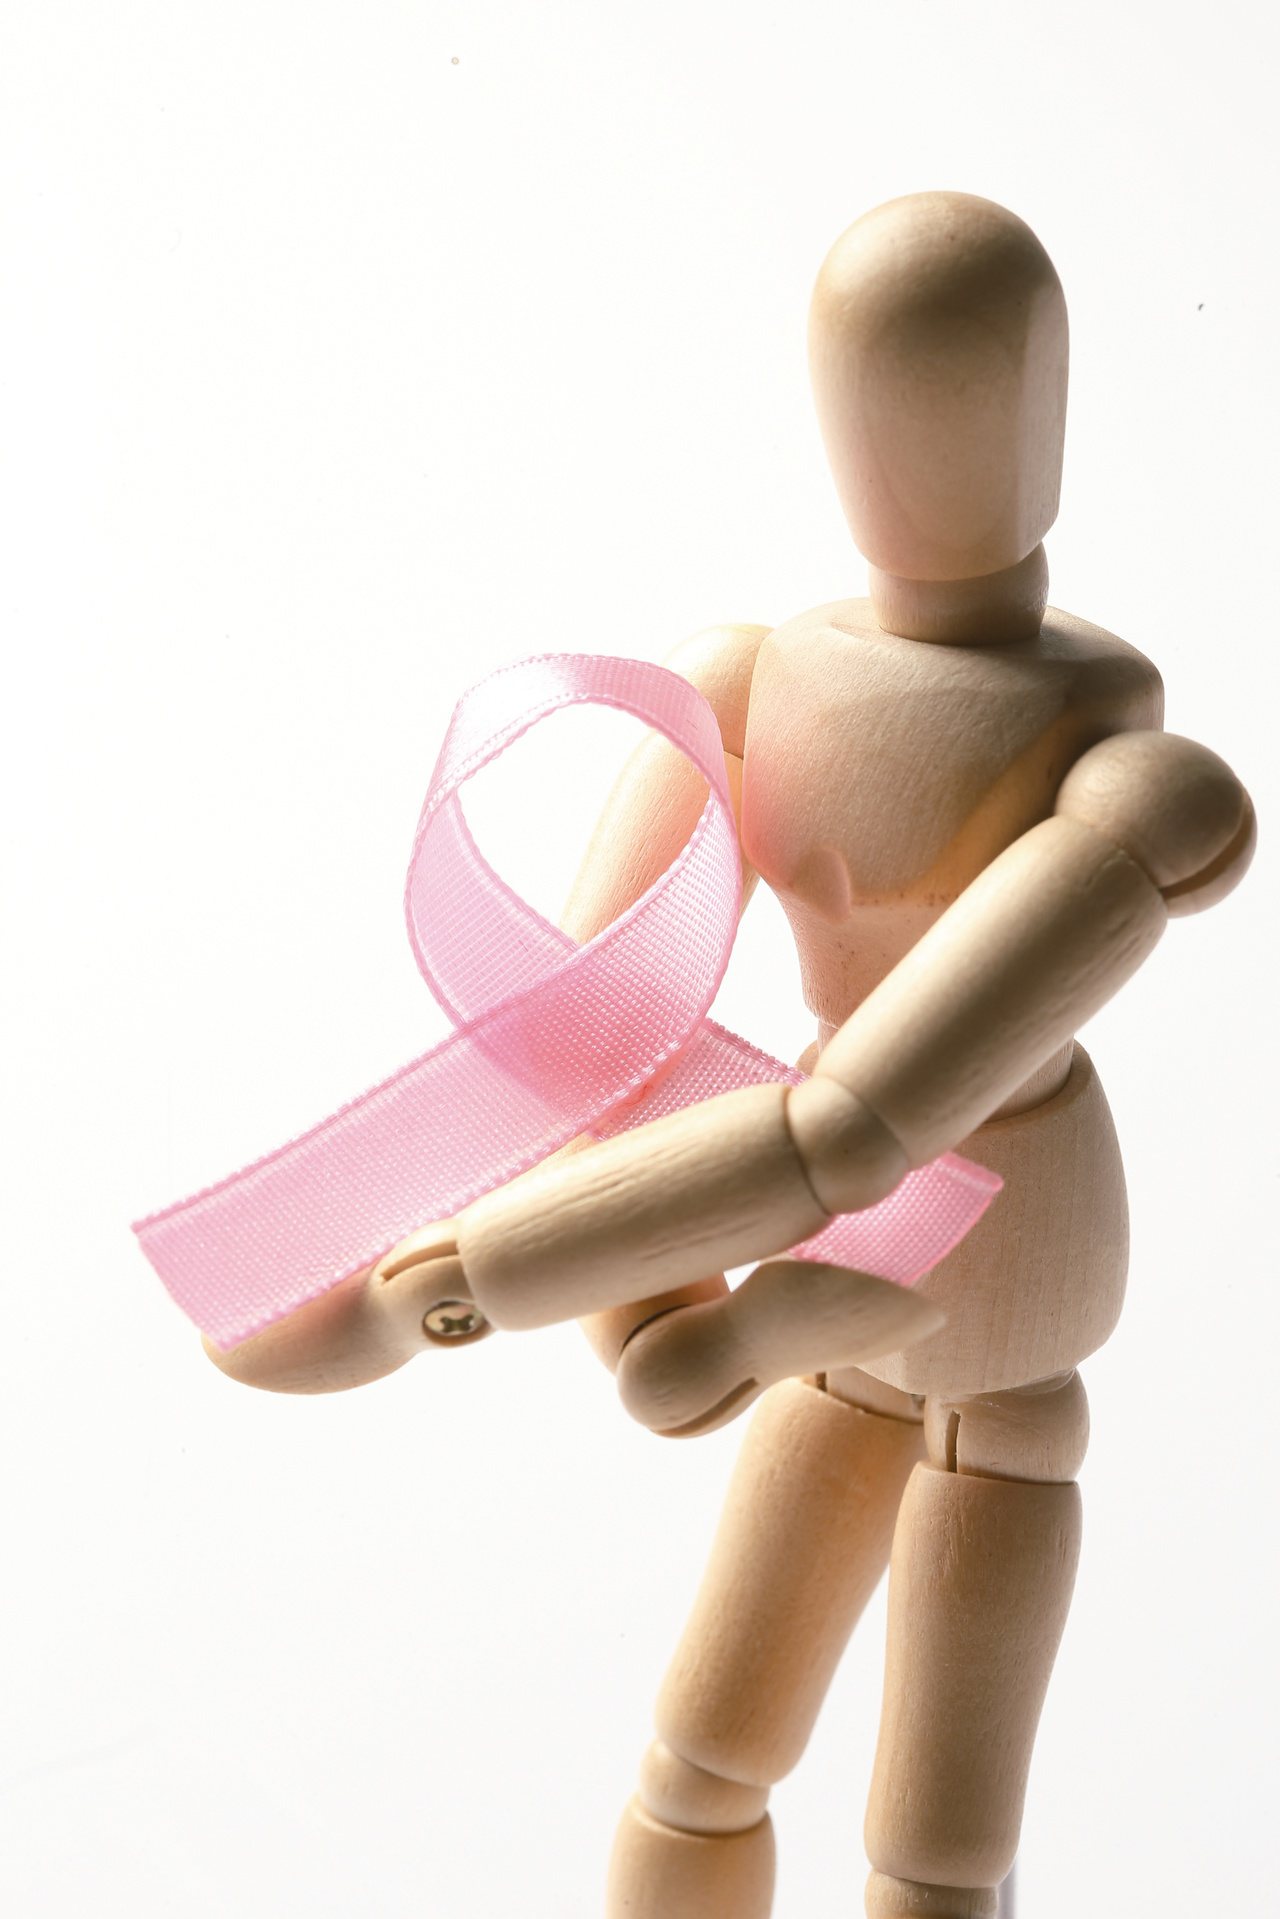 乳癌近年來是台灣女性癌症發生率首位，一旦乳癌上身，勢必面臨是否失去乳房的抉擇。